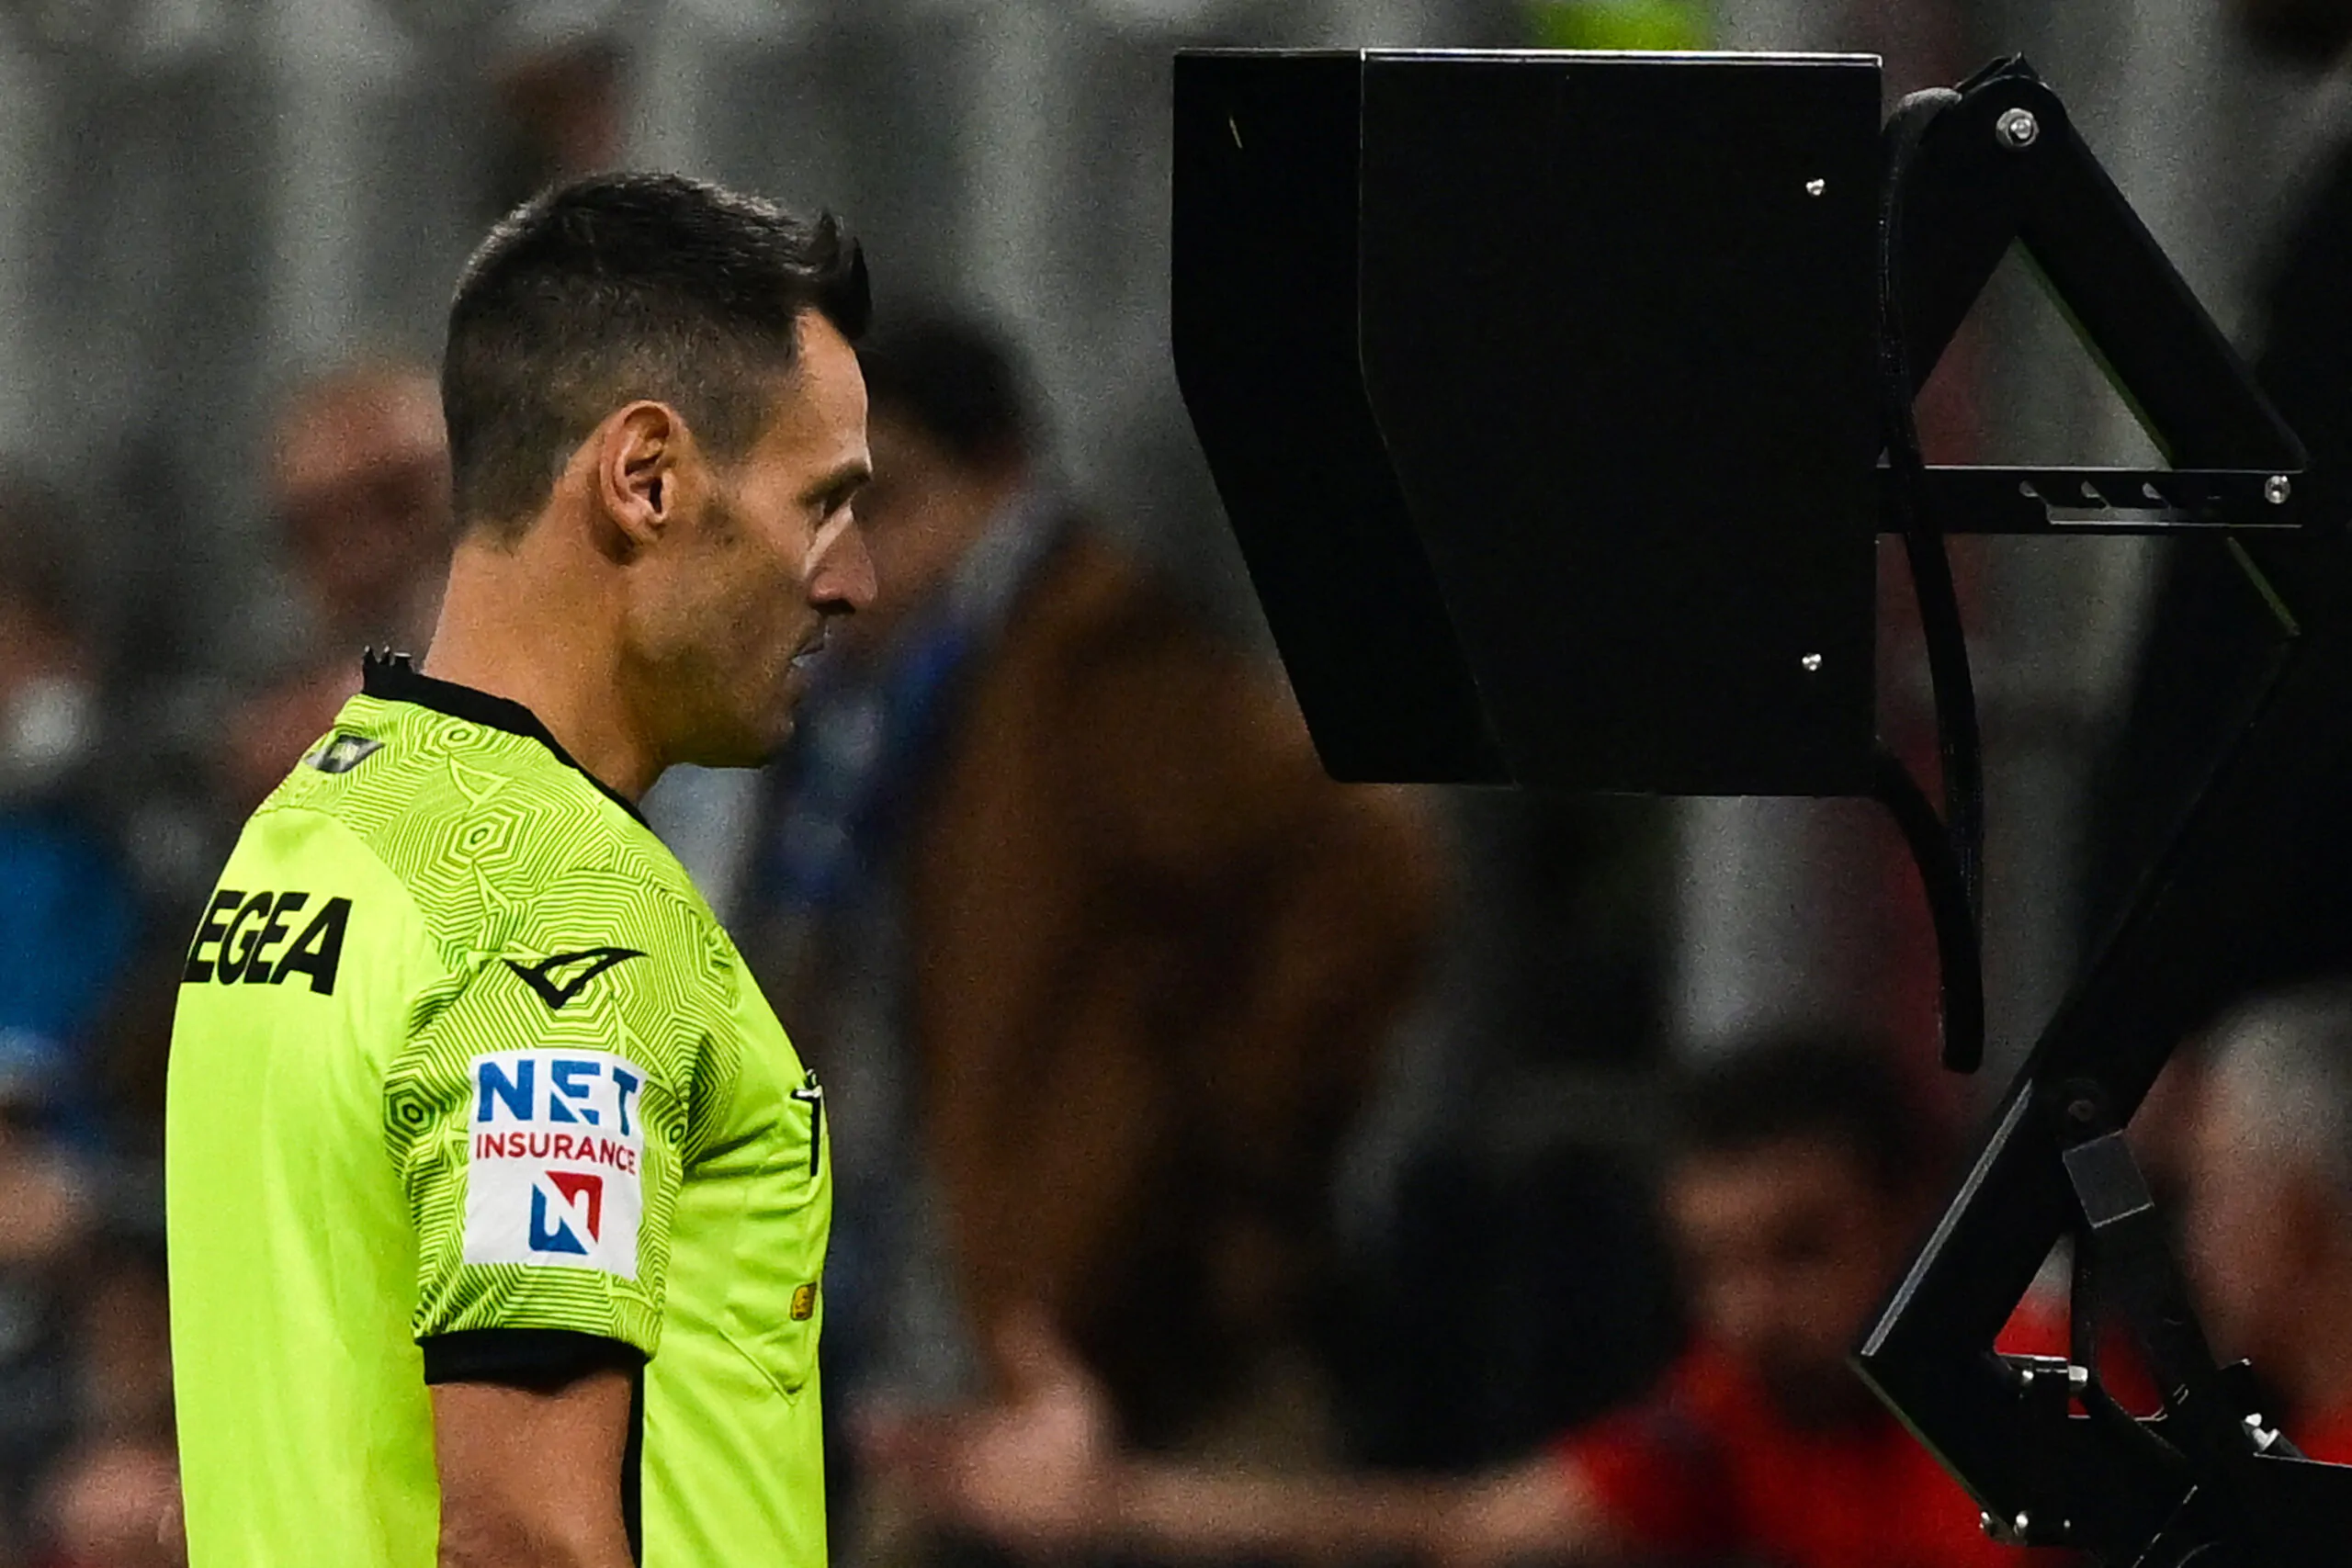 Svolta in Serie A, presto anche i tifosi ascolteranno i colloqui con il Var: le parole dell’arbitro!